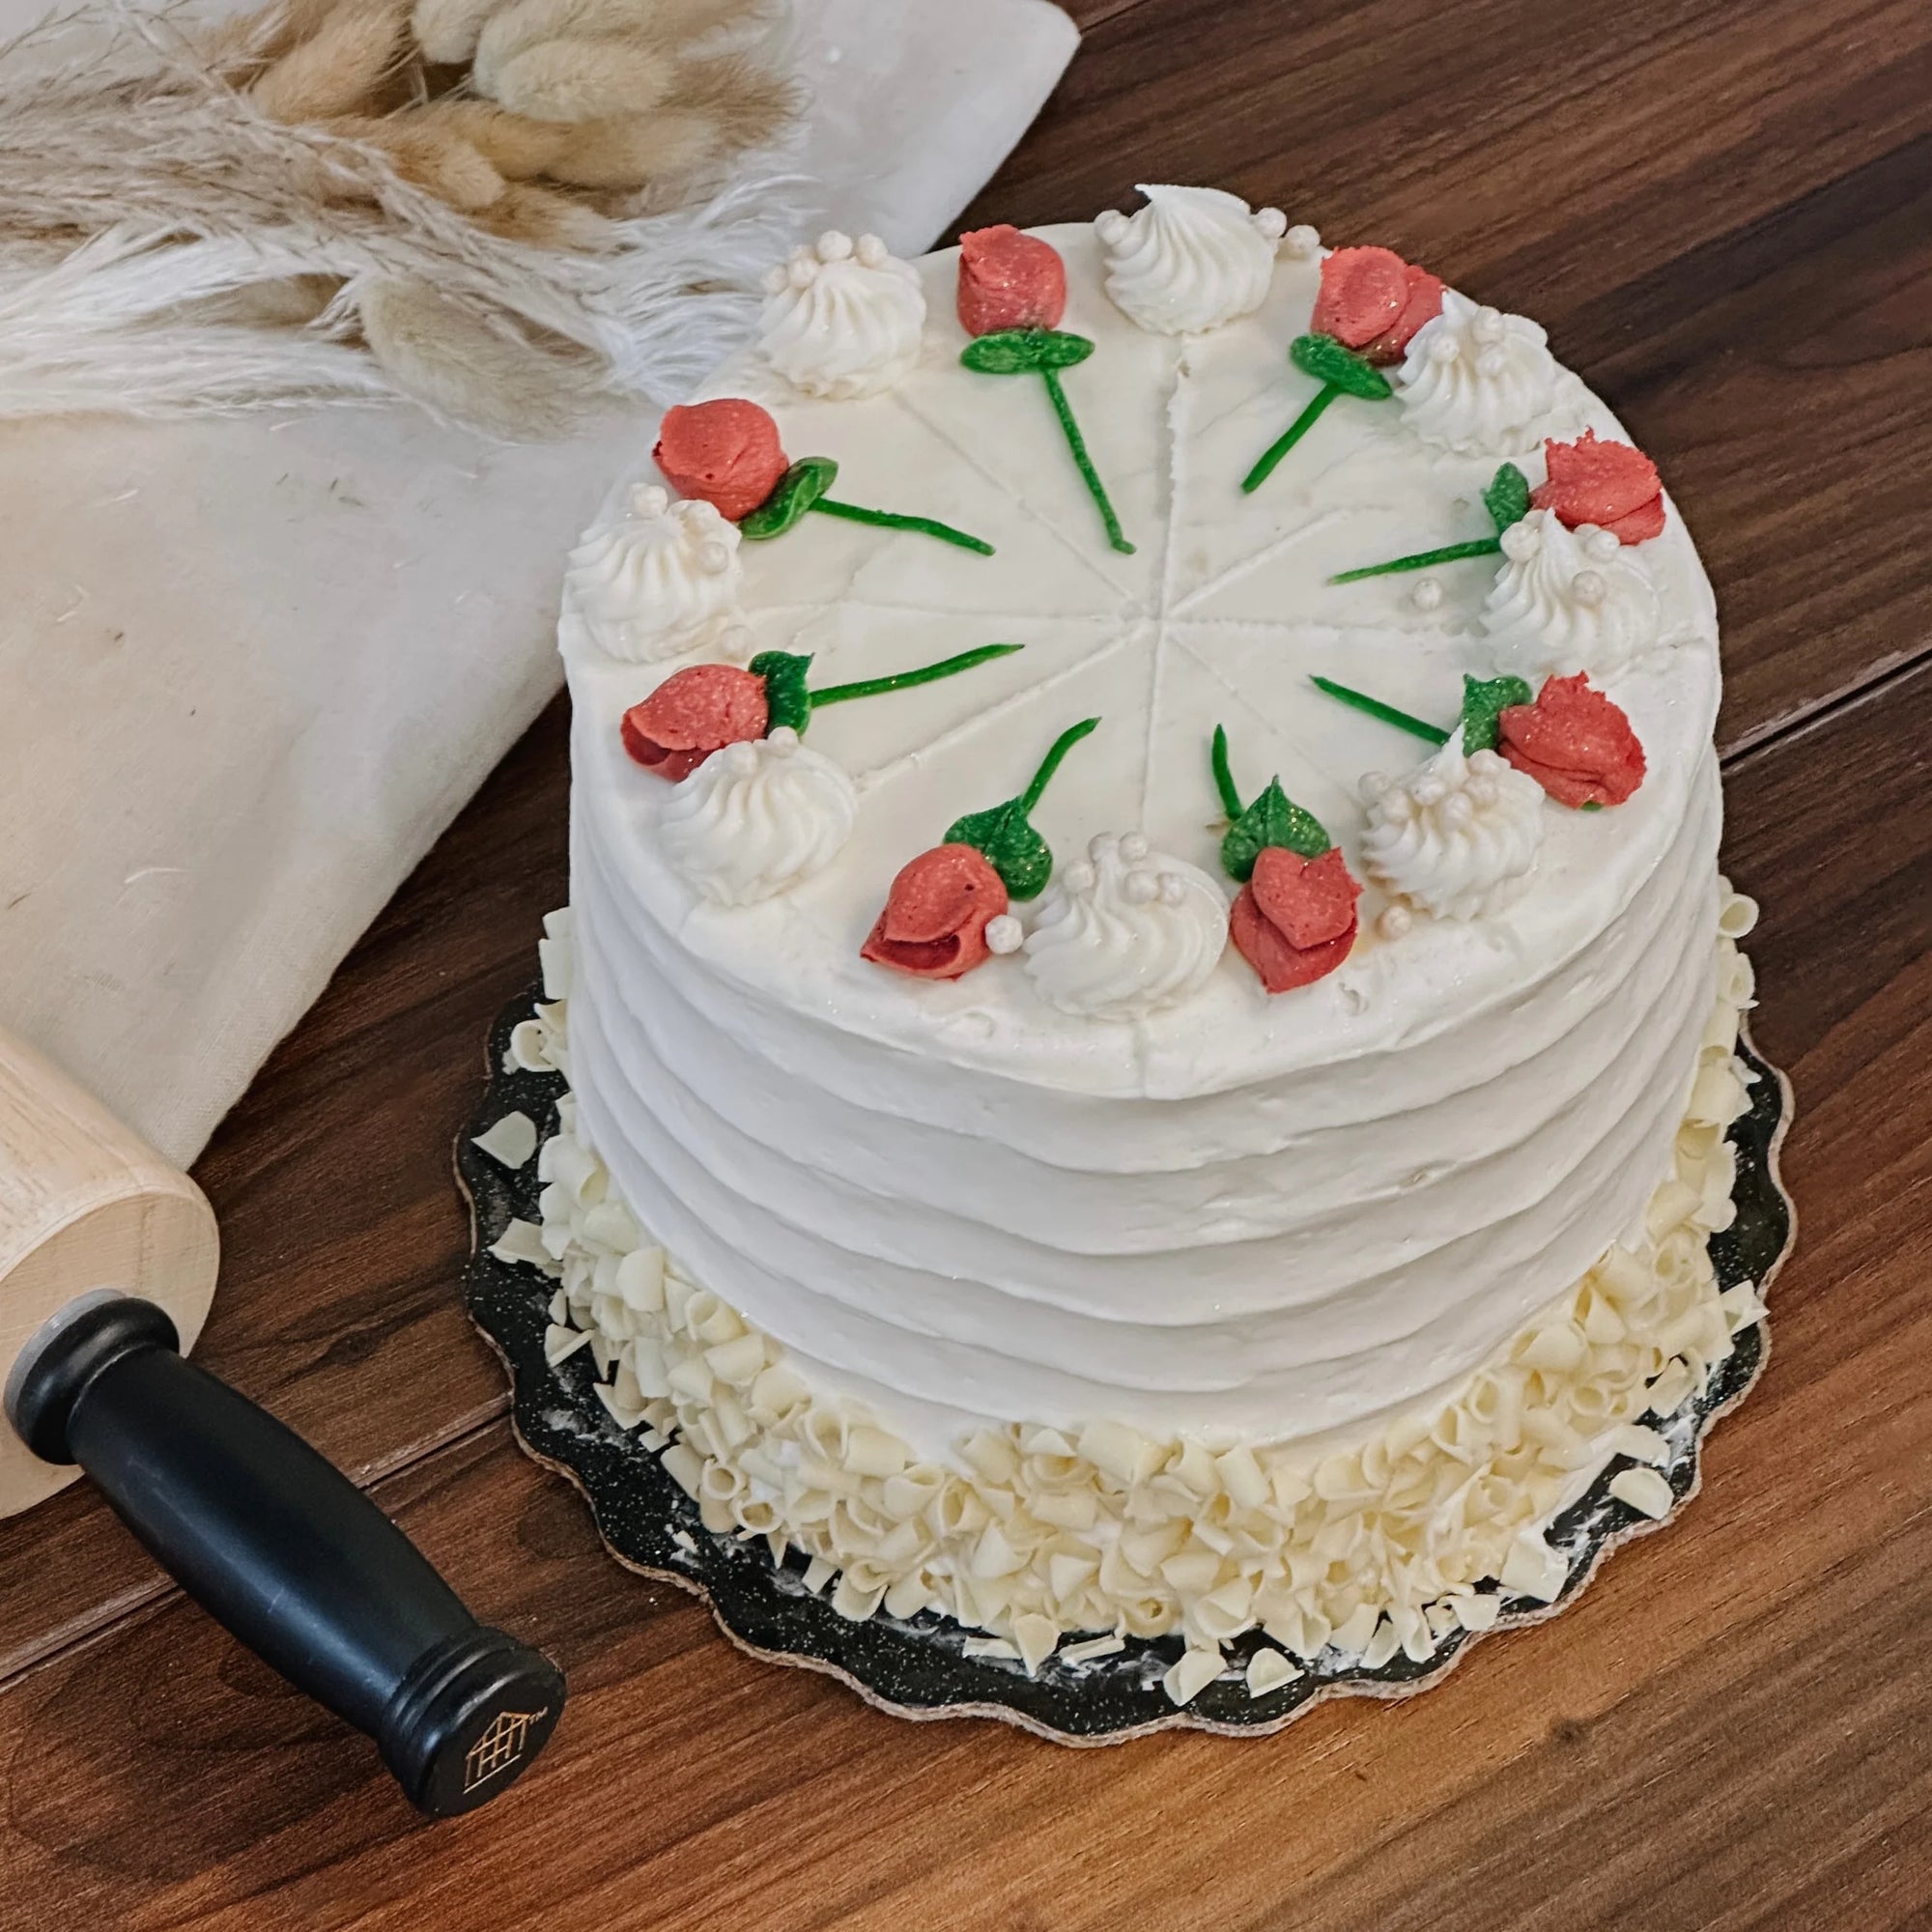 Gourmet Red Velvet Cake